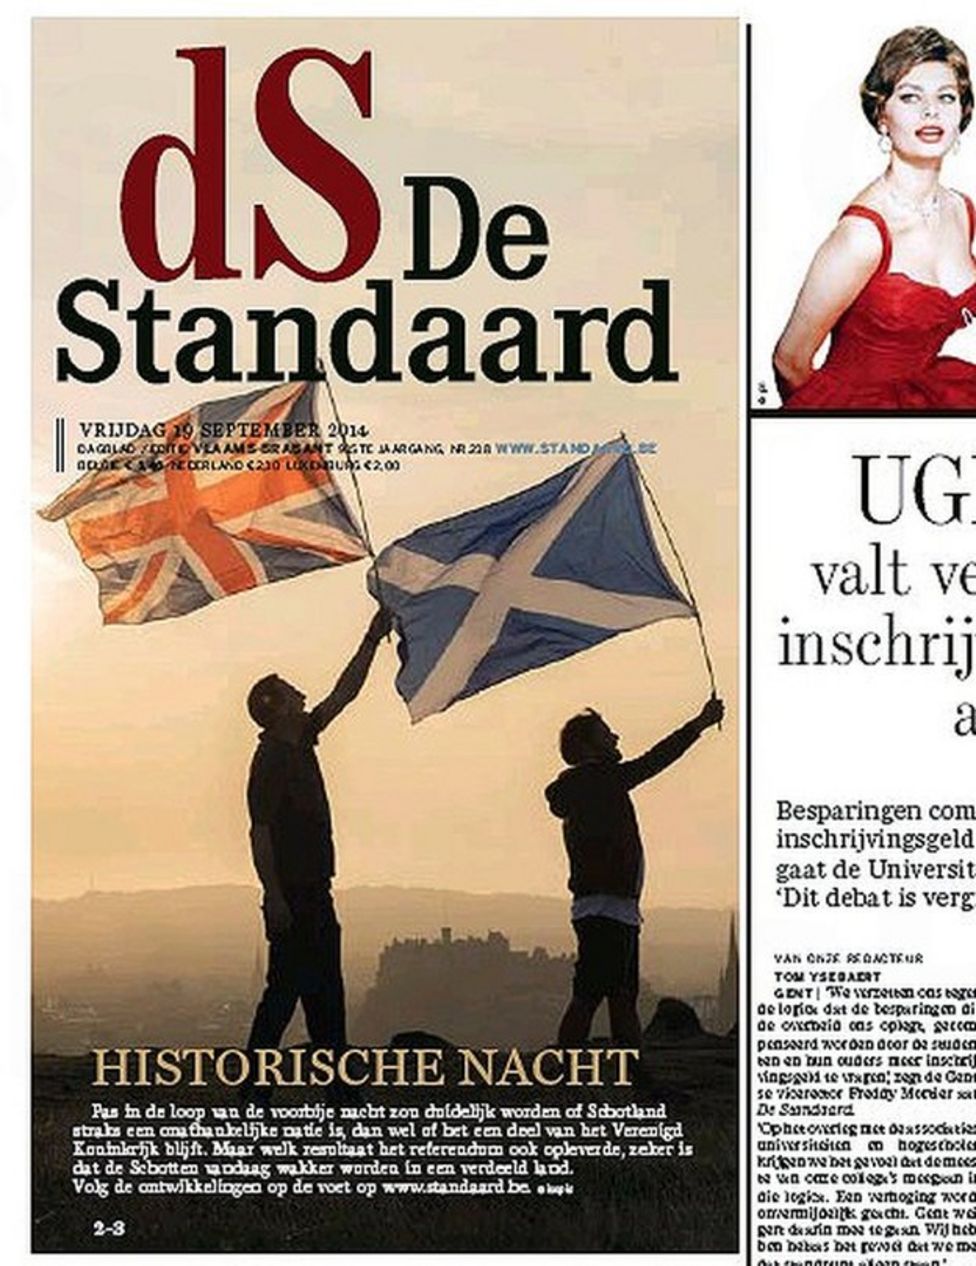 Scottish Referendum No Vote Makes Headlines Across The Globe Bbc News